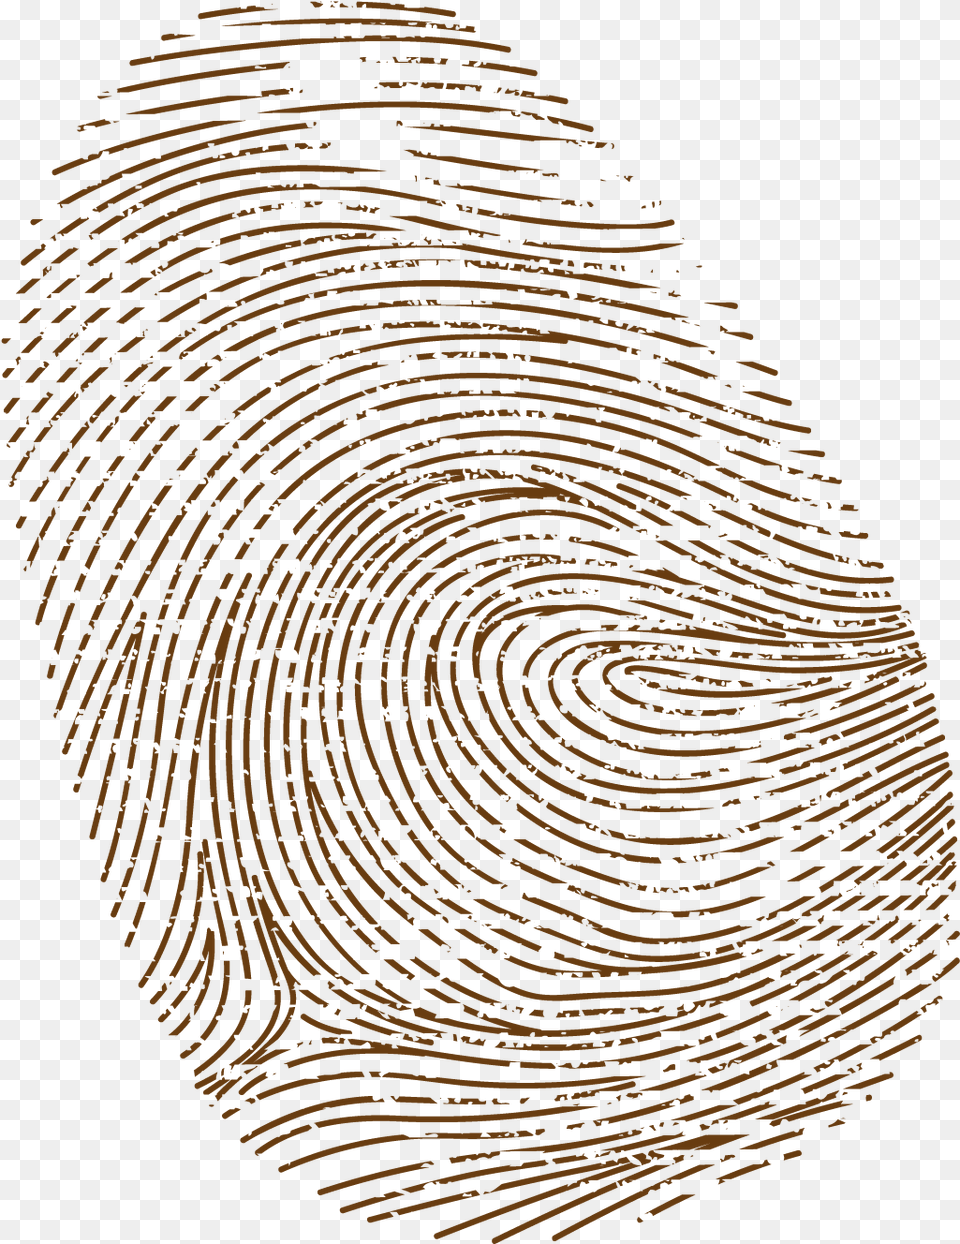 Brown Fingerprint With Brown Fingerprint, Home Decor, Rug, Wood, Spiral Free Transparent Png